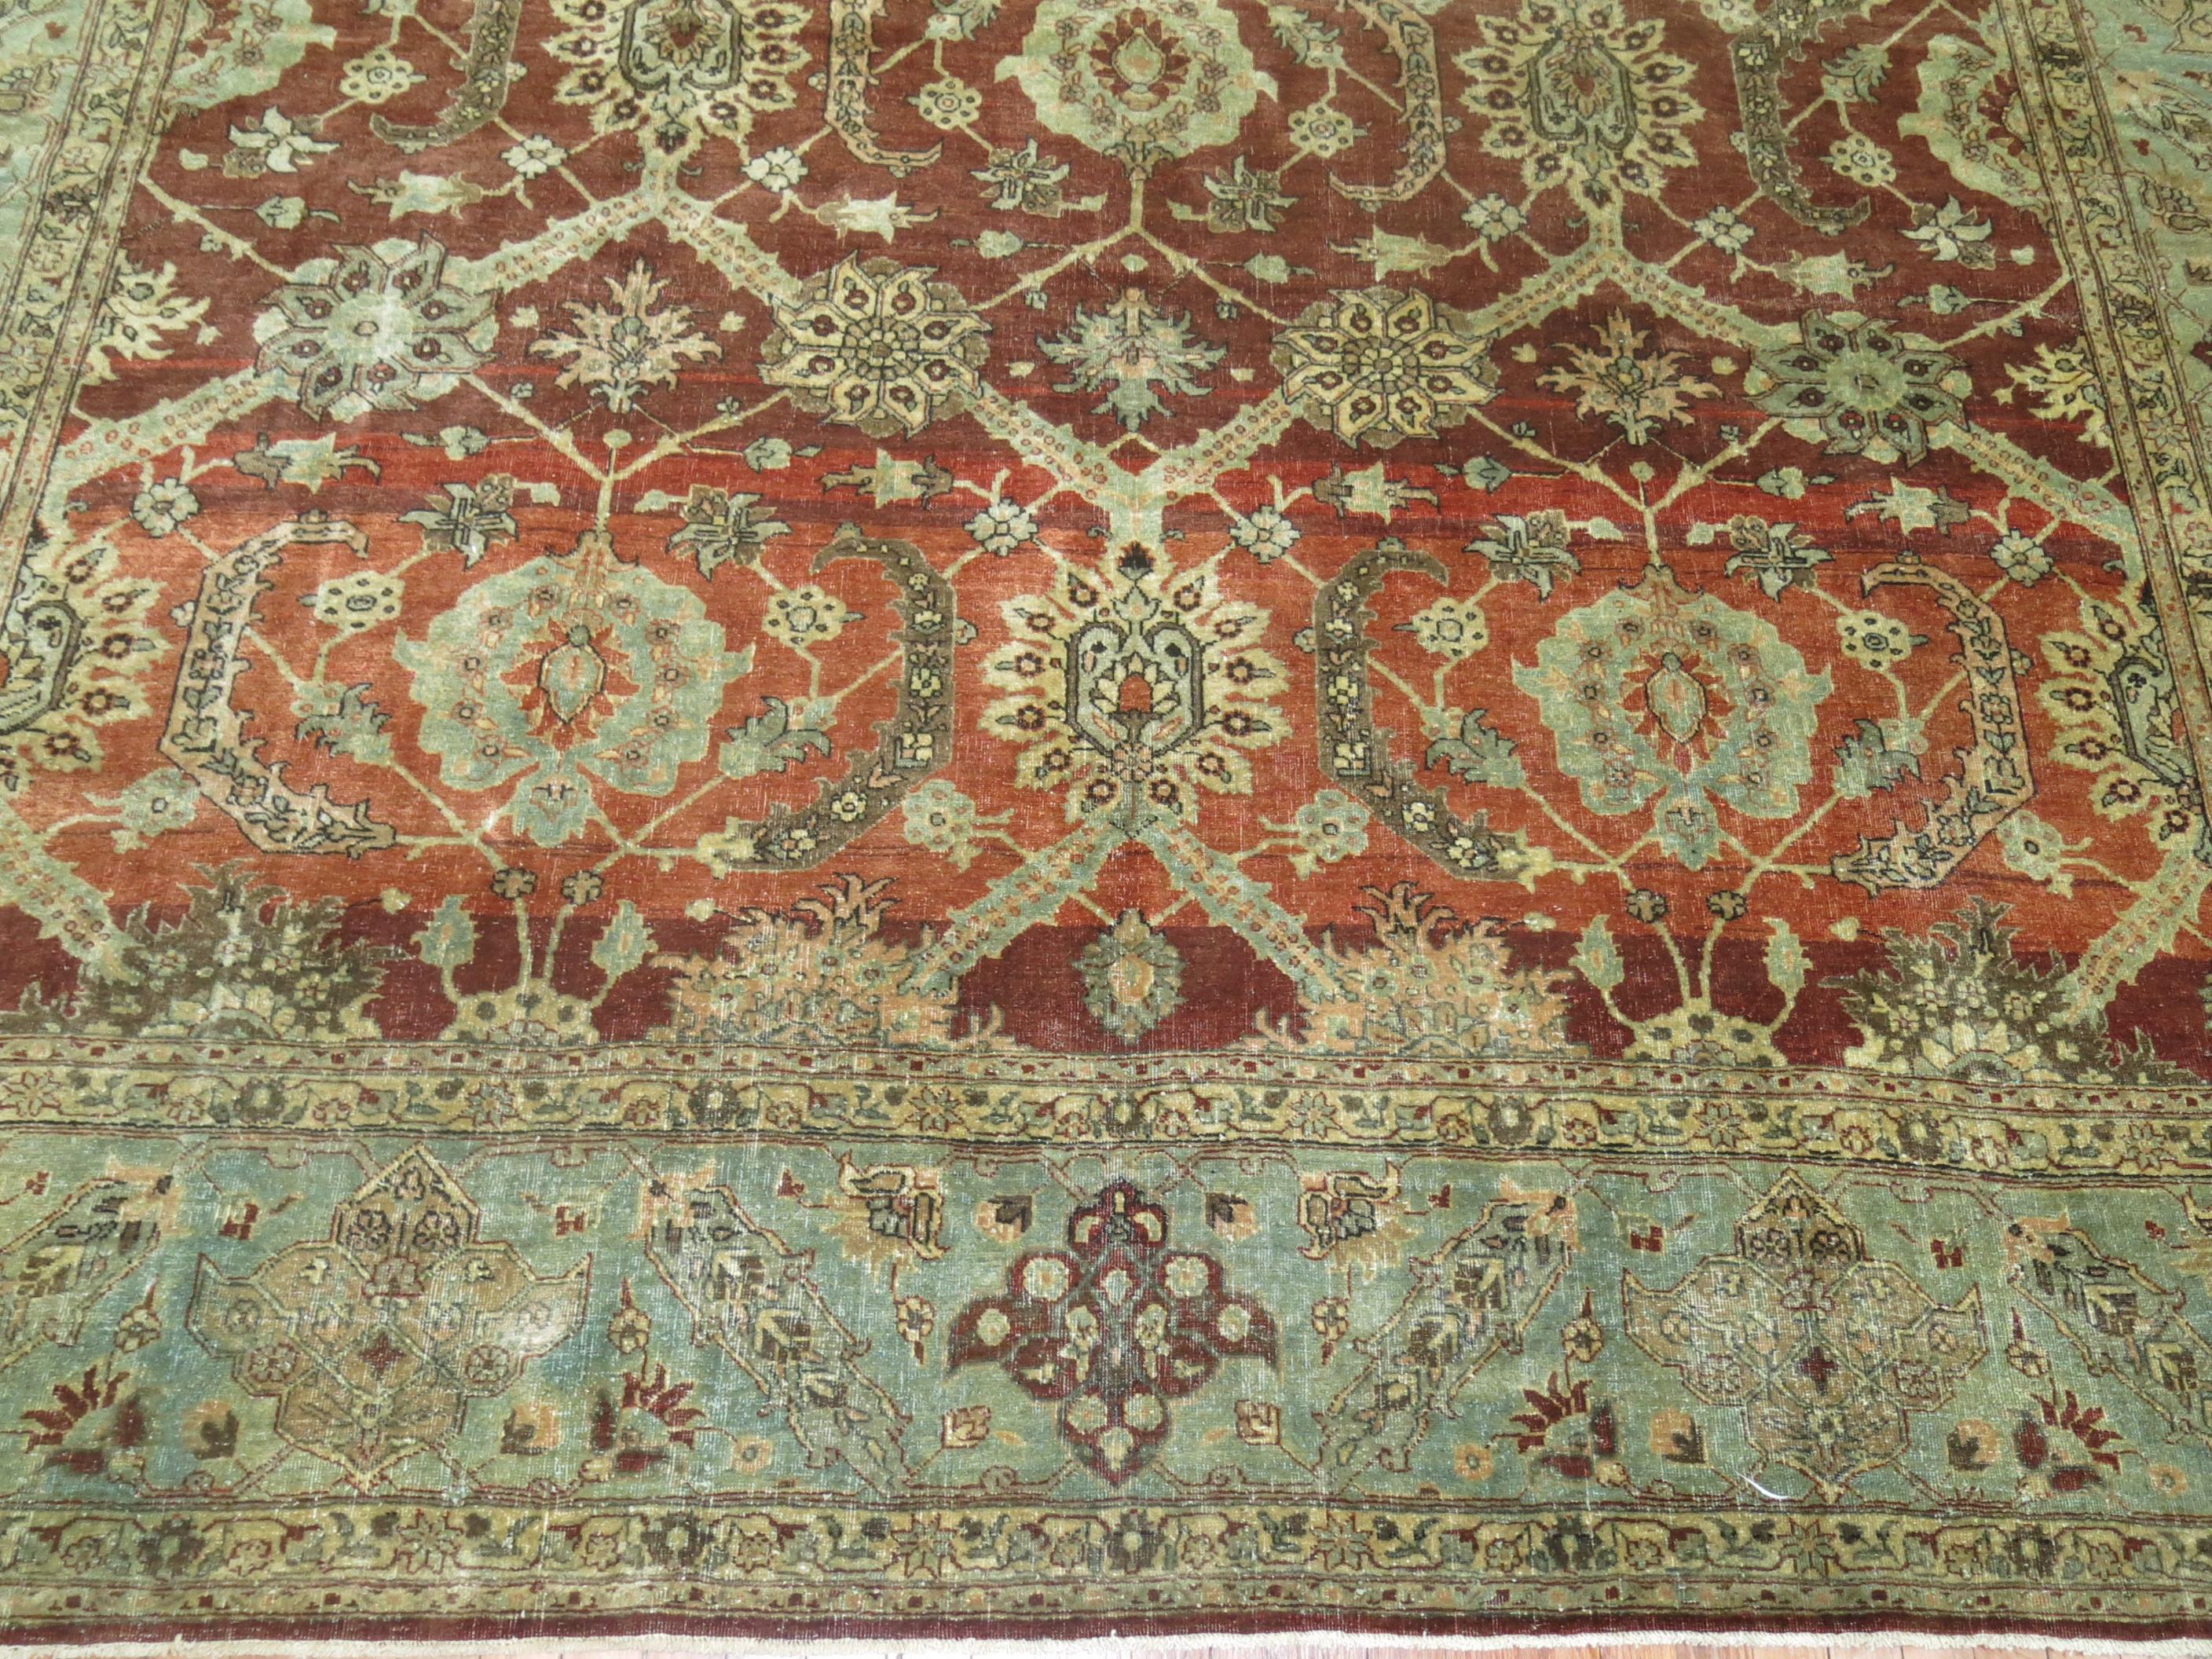 Authentischer zimmergroßer persischer Täbriz-Teppich.

Ein antiker Täbris kann aus Baumwolle oder Seide bestehen und als Florteppich oder Flachgewebe gewebt sein. Eine raffinierte Farbpalette mit Kupfer-, Terrakotta- und Elfenbeintönen, Blautönen